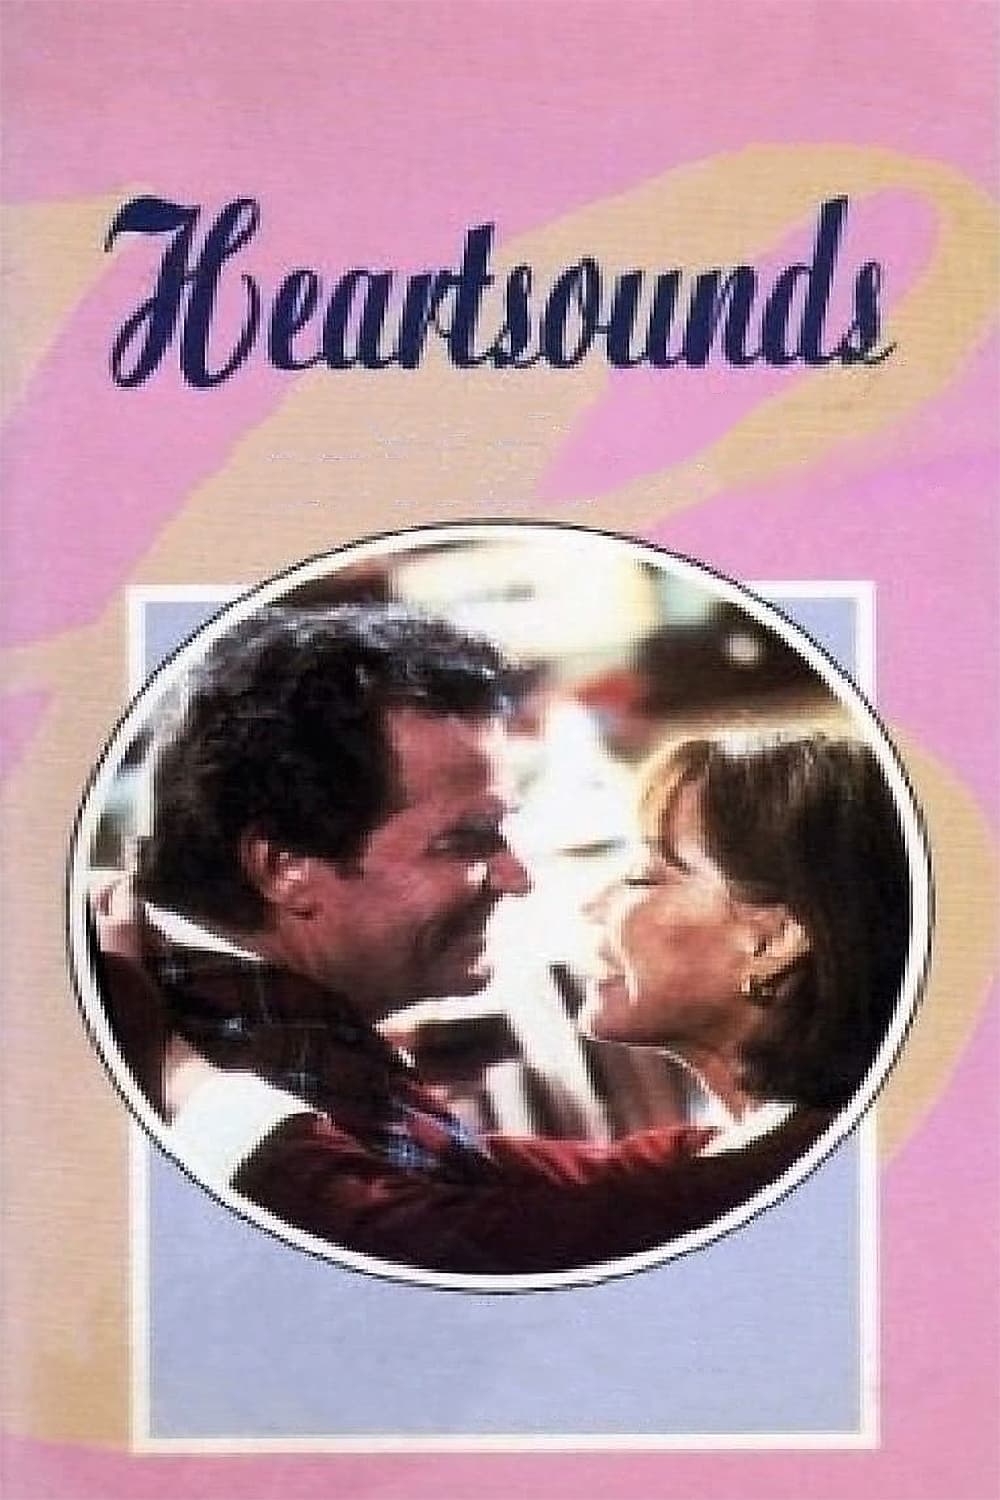 Heartsounds